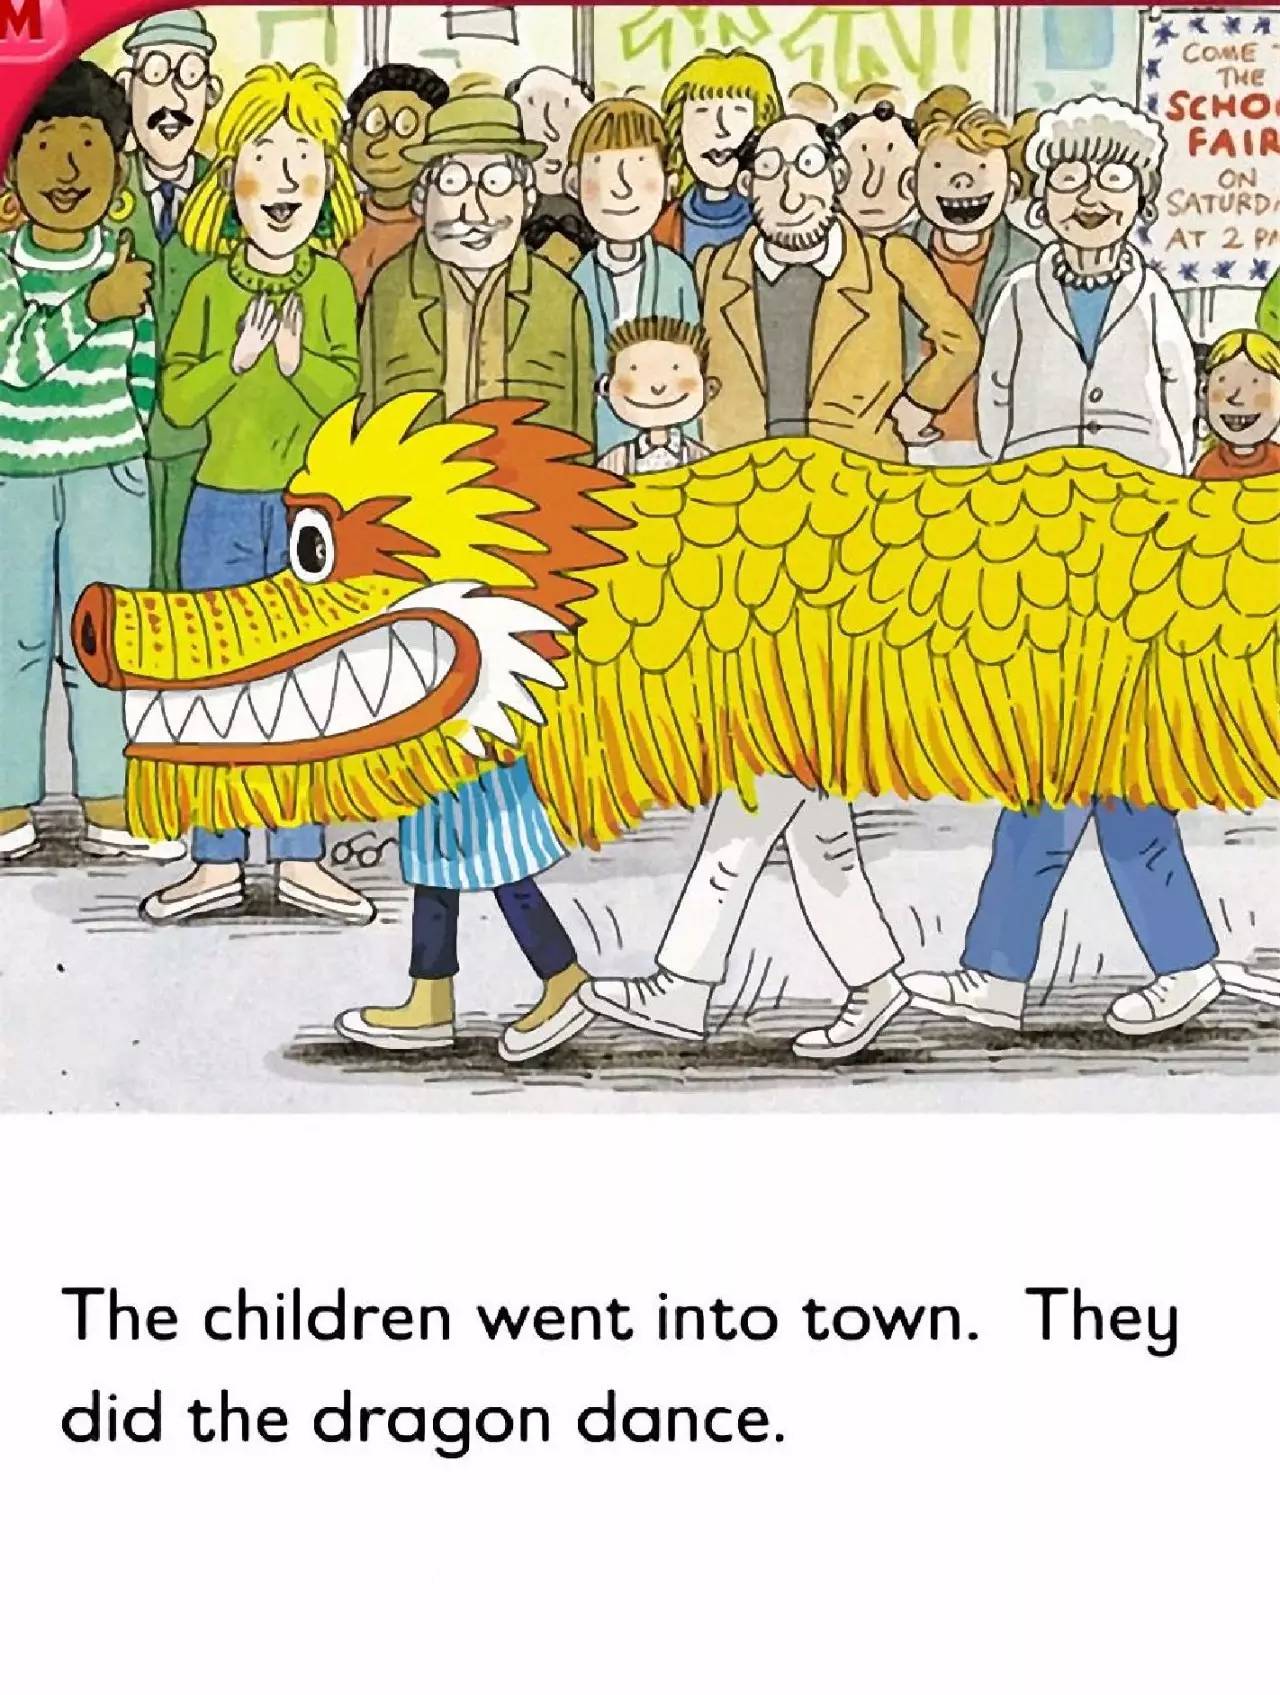 【小熊猫睡前故事】第161天小熊猫陪你读 the dragon dance,宝贝们